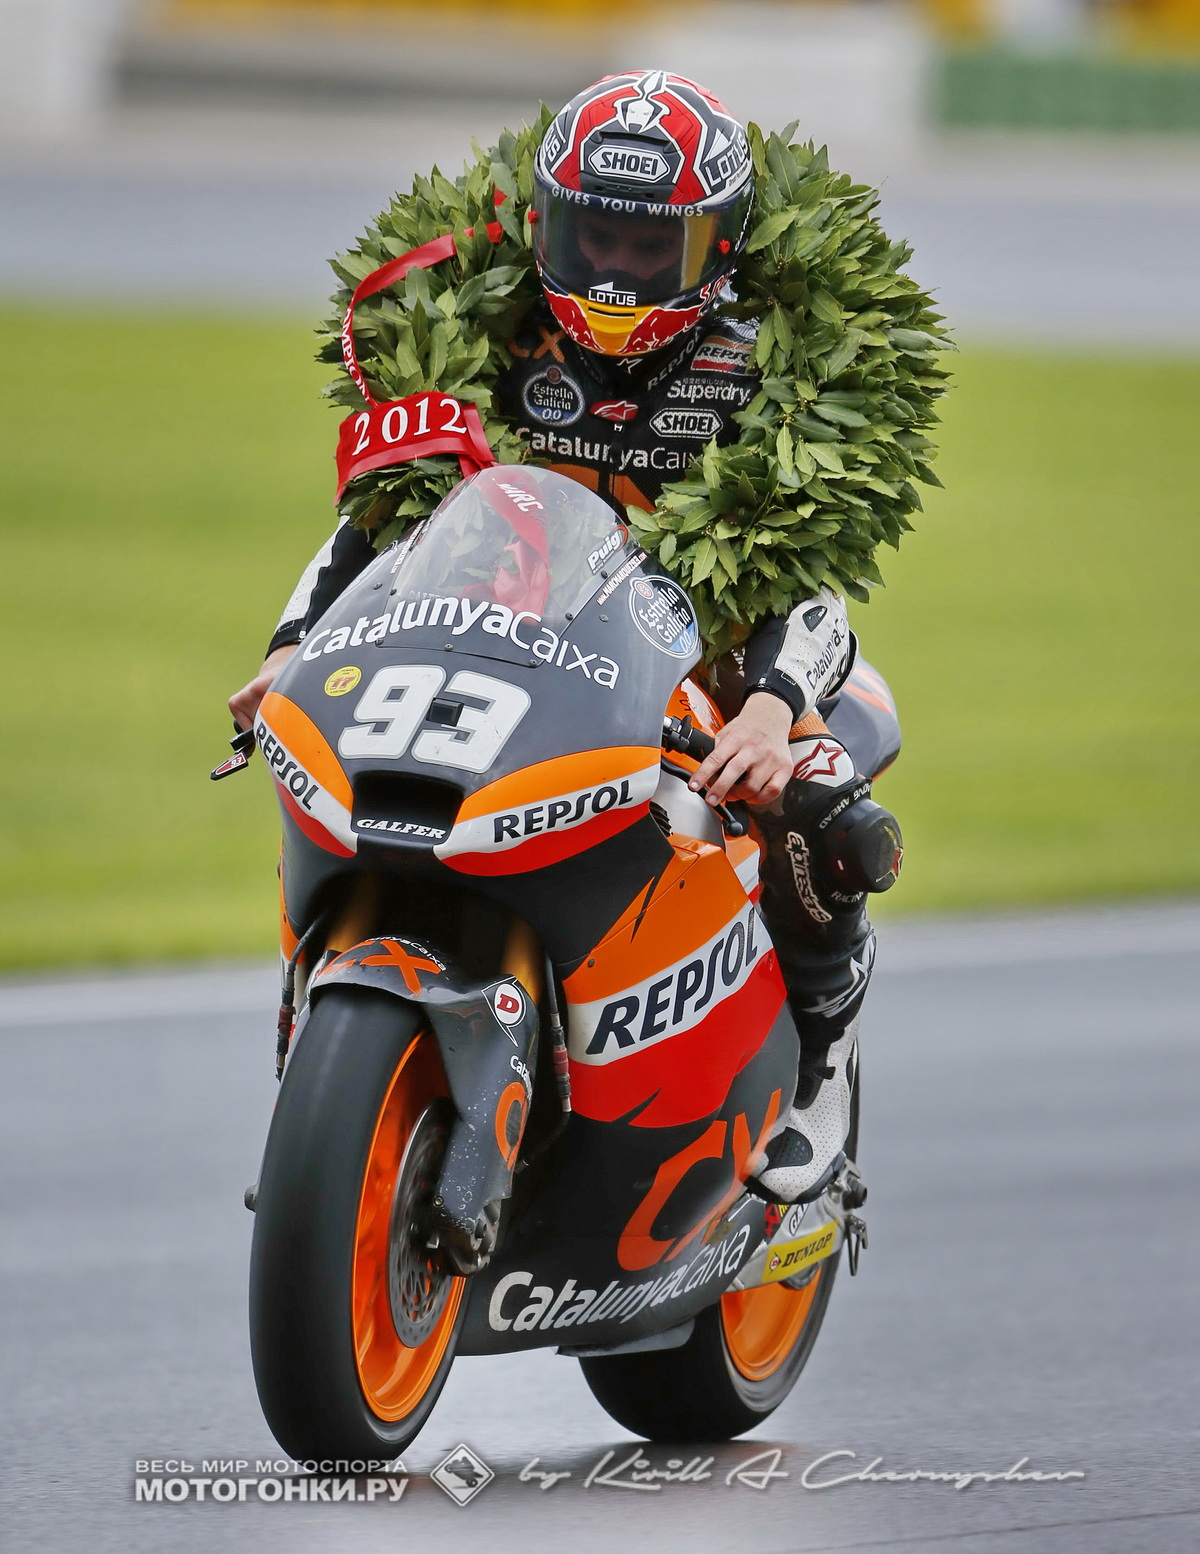 8-кратный чемпион мира Марк Маркес празднует титул в Moto2 (2012), до этого он взял GP125, а после - 6 титулов в MotoGP